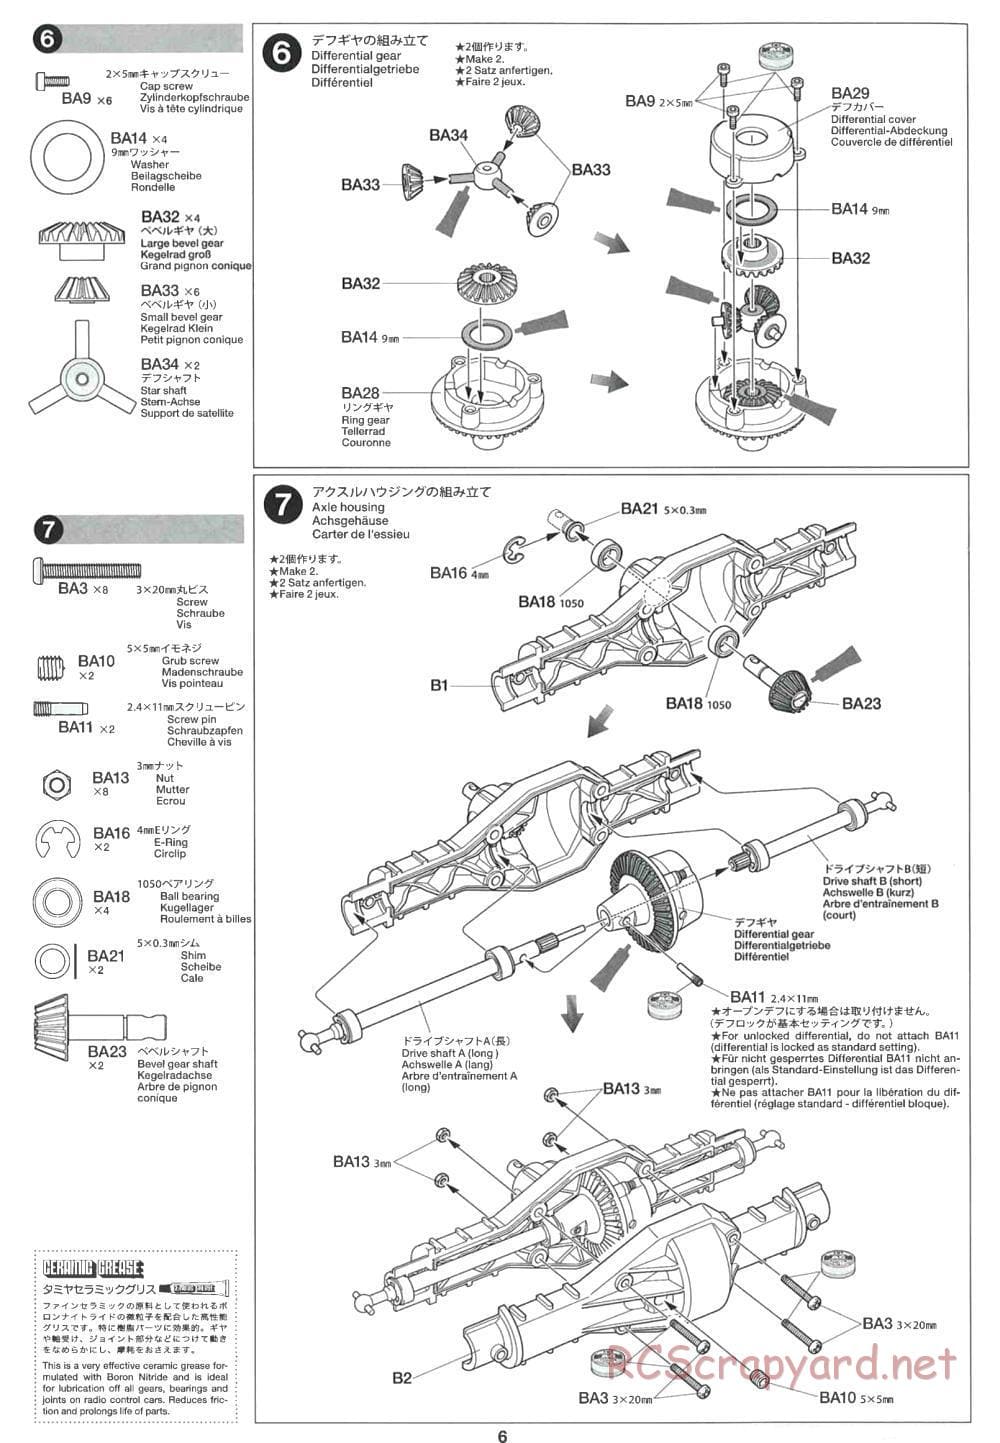 Tamiya - CR-01 Chassis - Manual - Page 6